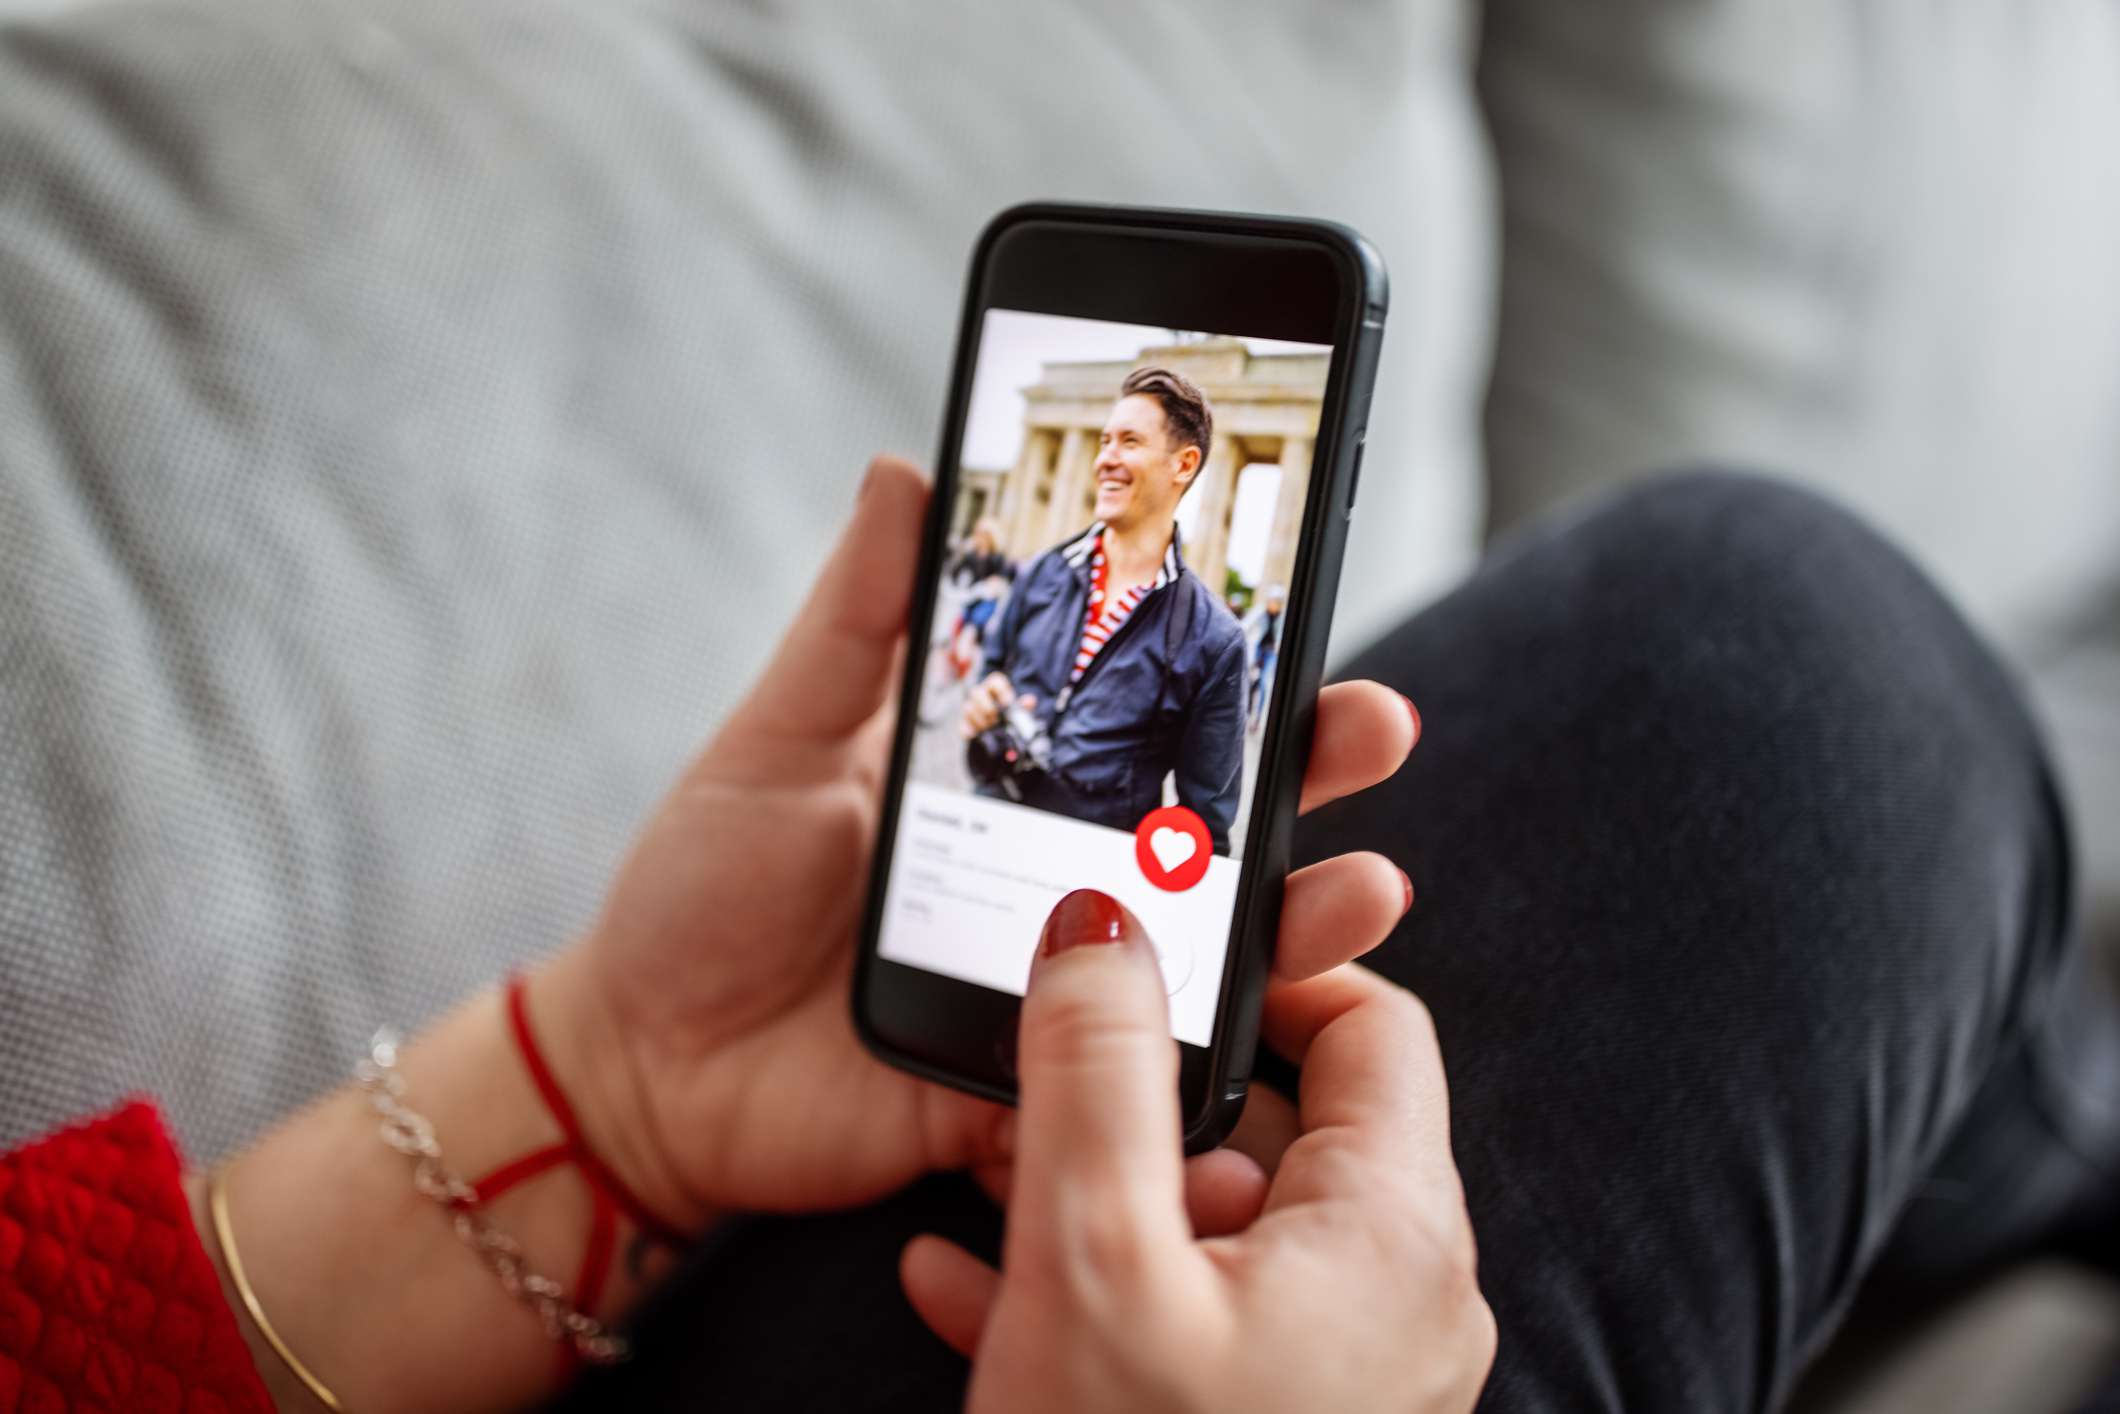 Smene met behulp van een online dating-app op een smartphone.